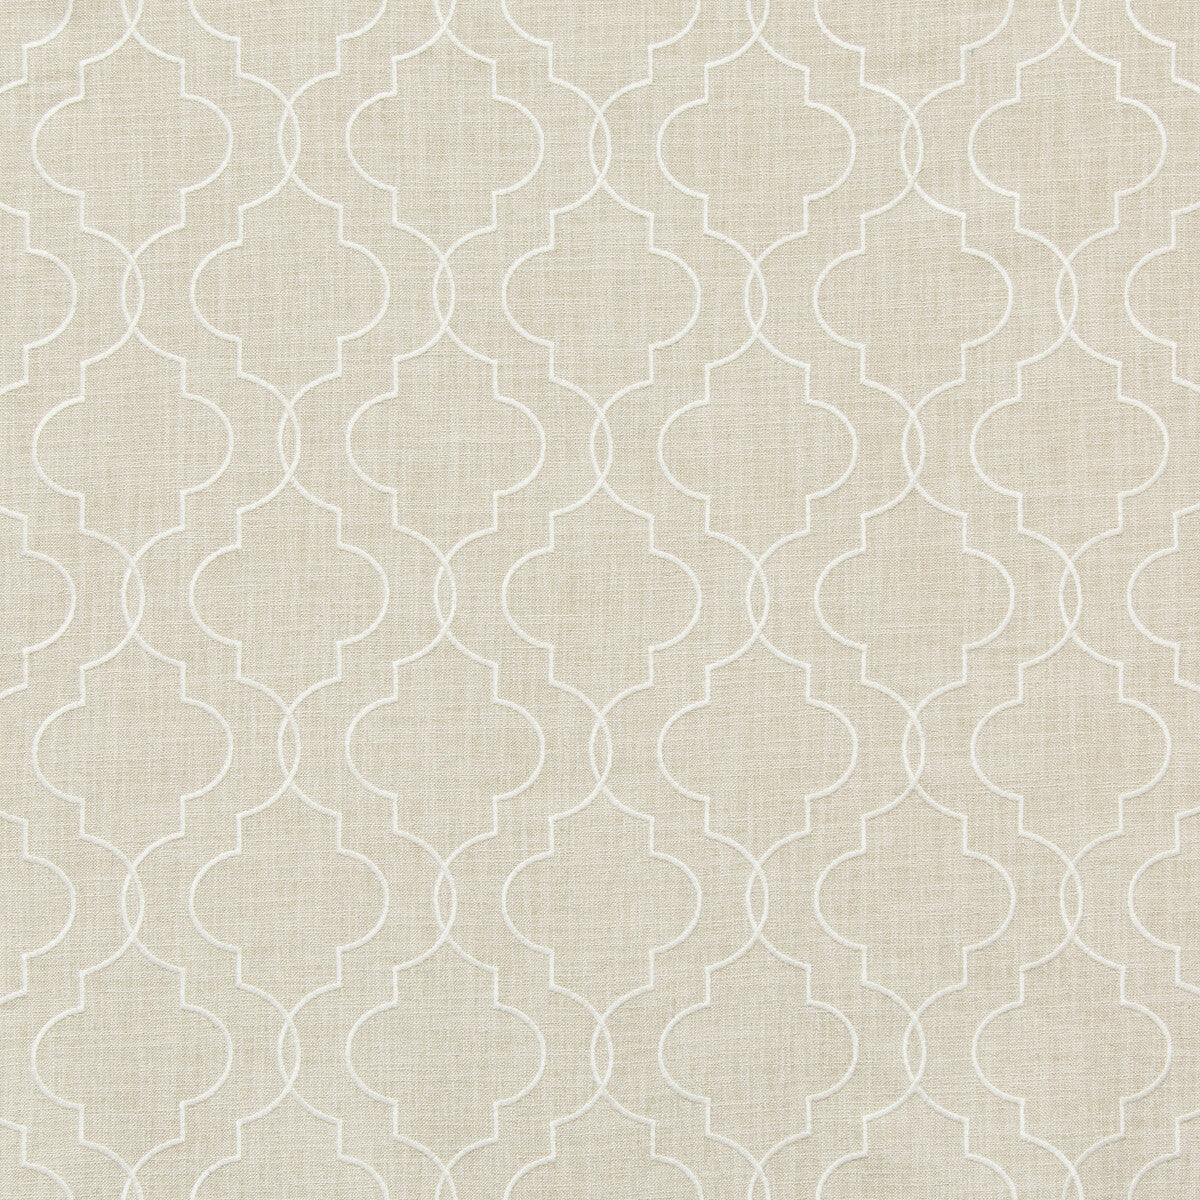 Kravet Basics fabric in 35794-16 color - pattern 35794.16.0 - by Kravet Basics